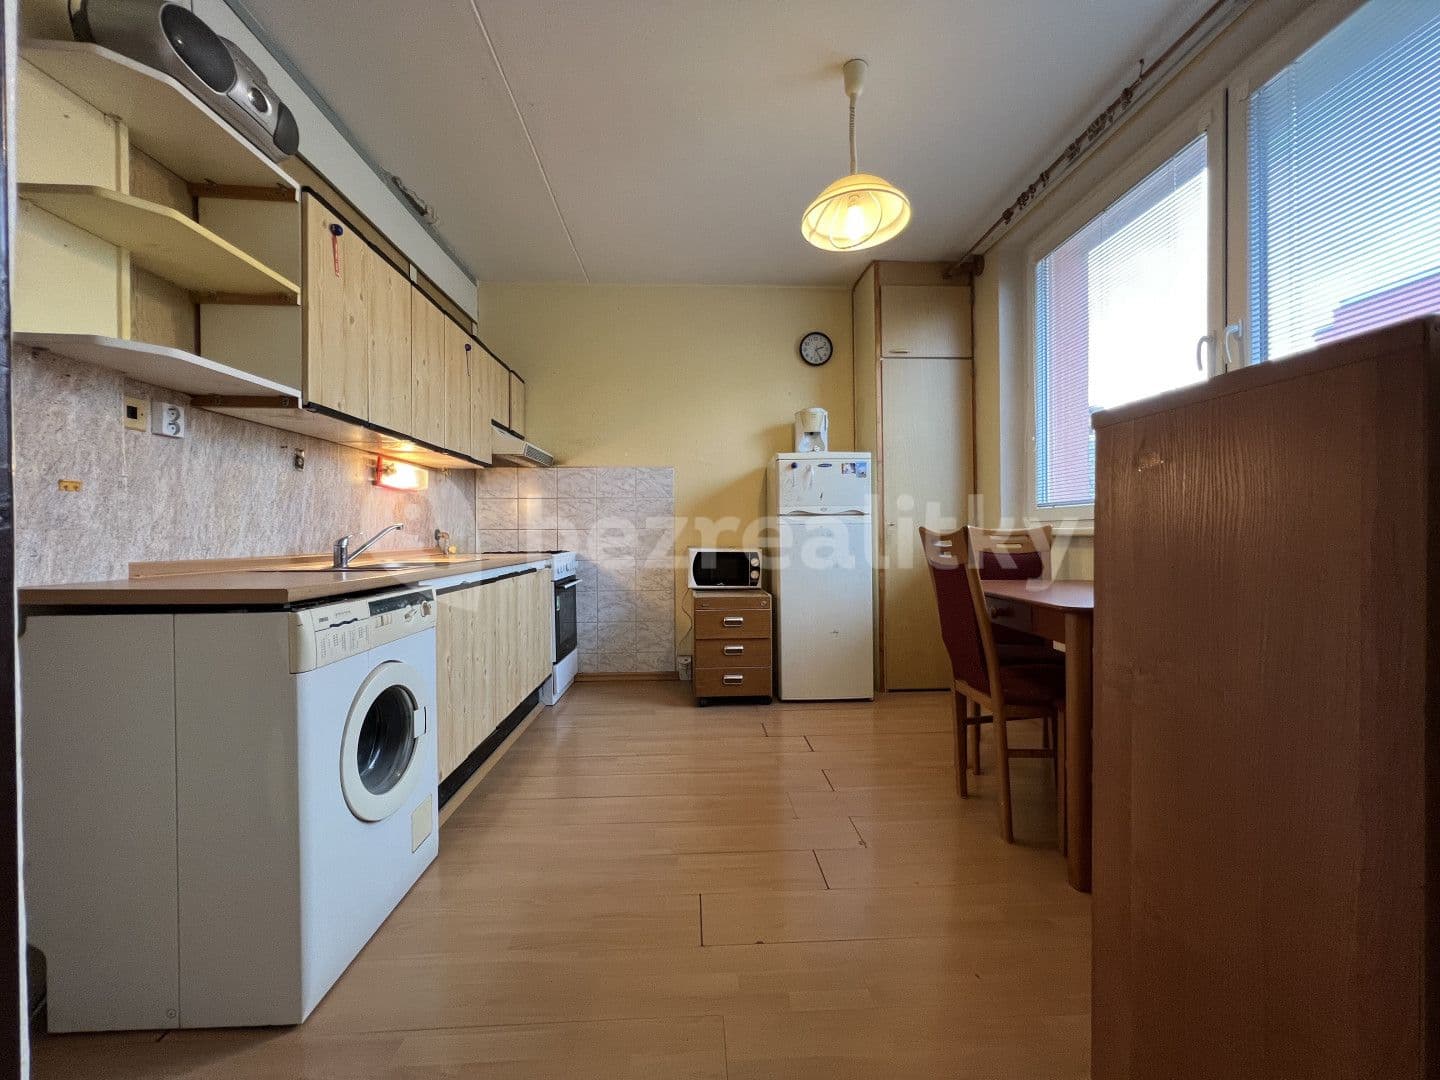 2 bedroom flat for sale, 58 m², Rumunská, Kroměříž, Zlínský Region